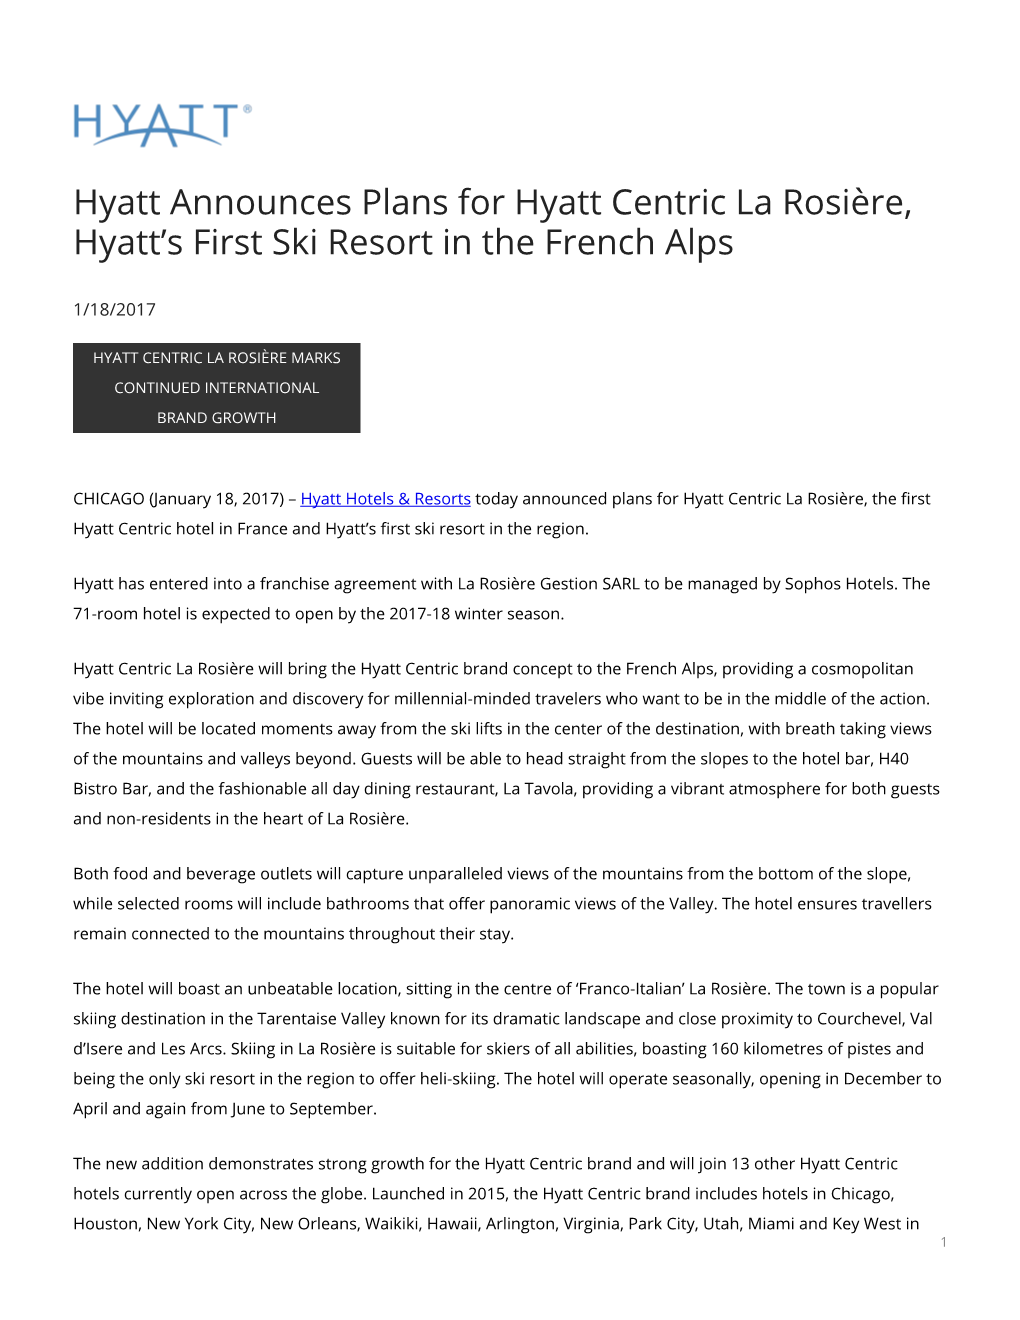 Hyatt Announces Plans for Hyatt Centric La Rosière, Hyatt's First Ski